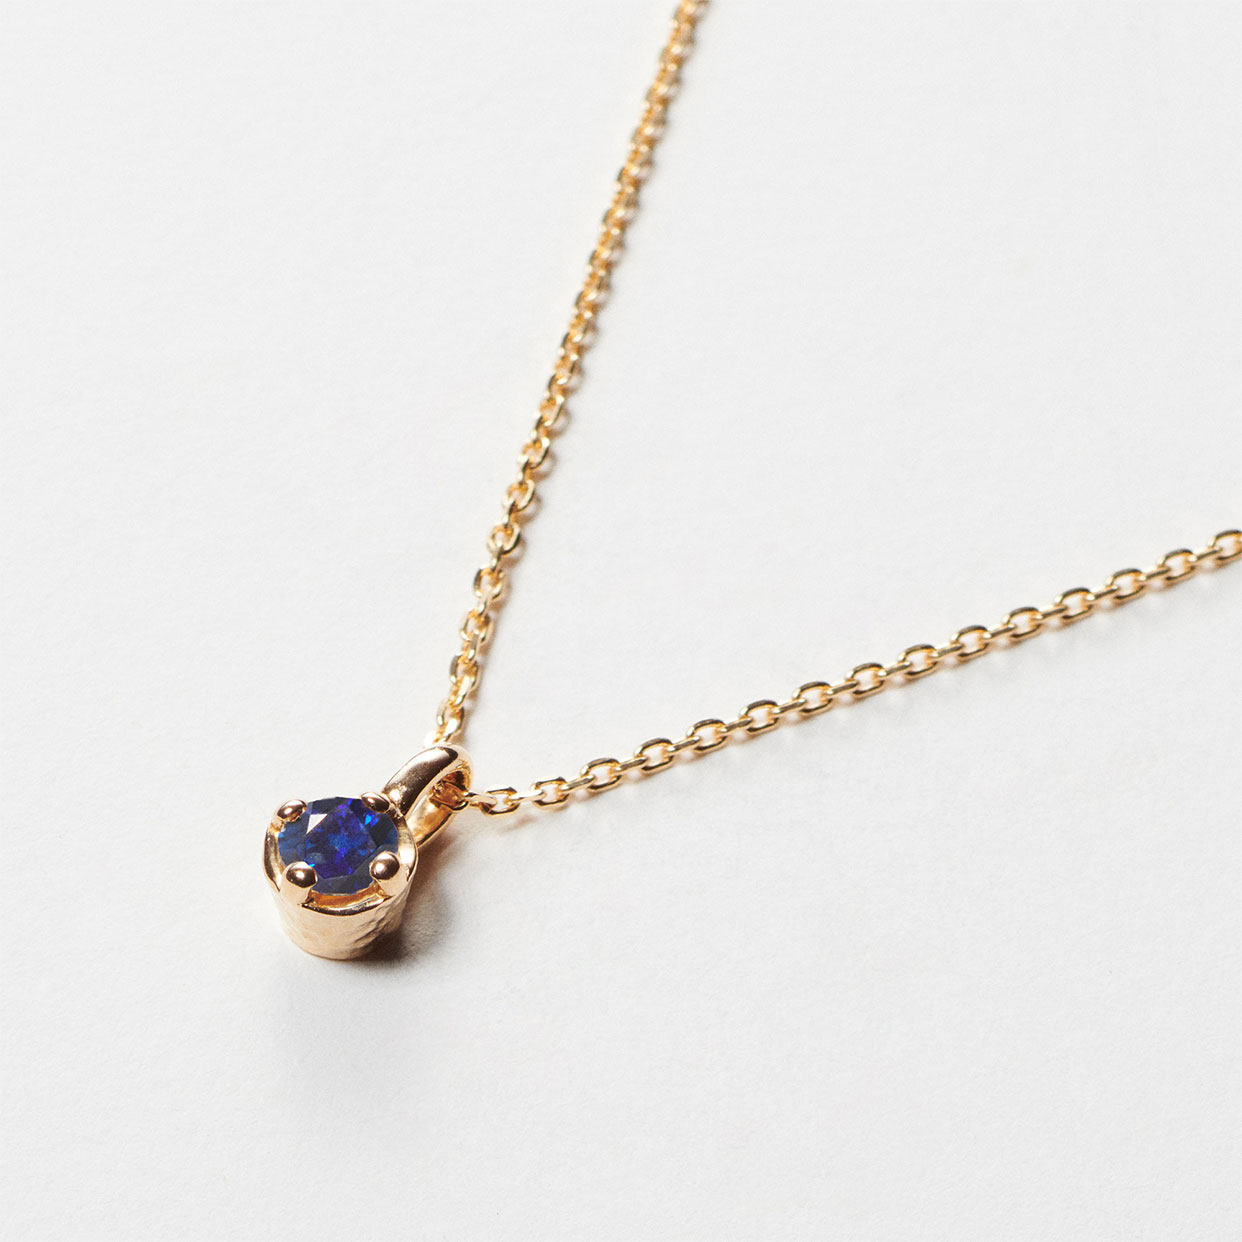 アニバーサリーネックレス | シンプルな1粒タイプのプチネックレス。小さな宝石と、宝石の周りに1周見える地金の色で、自分だけのオリジナルの組み合わせを楽しむことができるアニバーサリージュエリー。